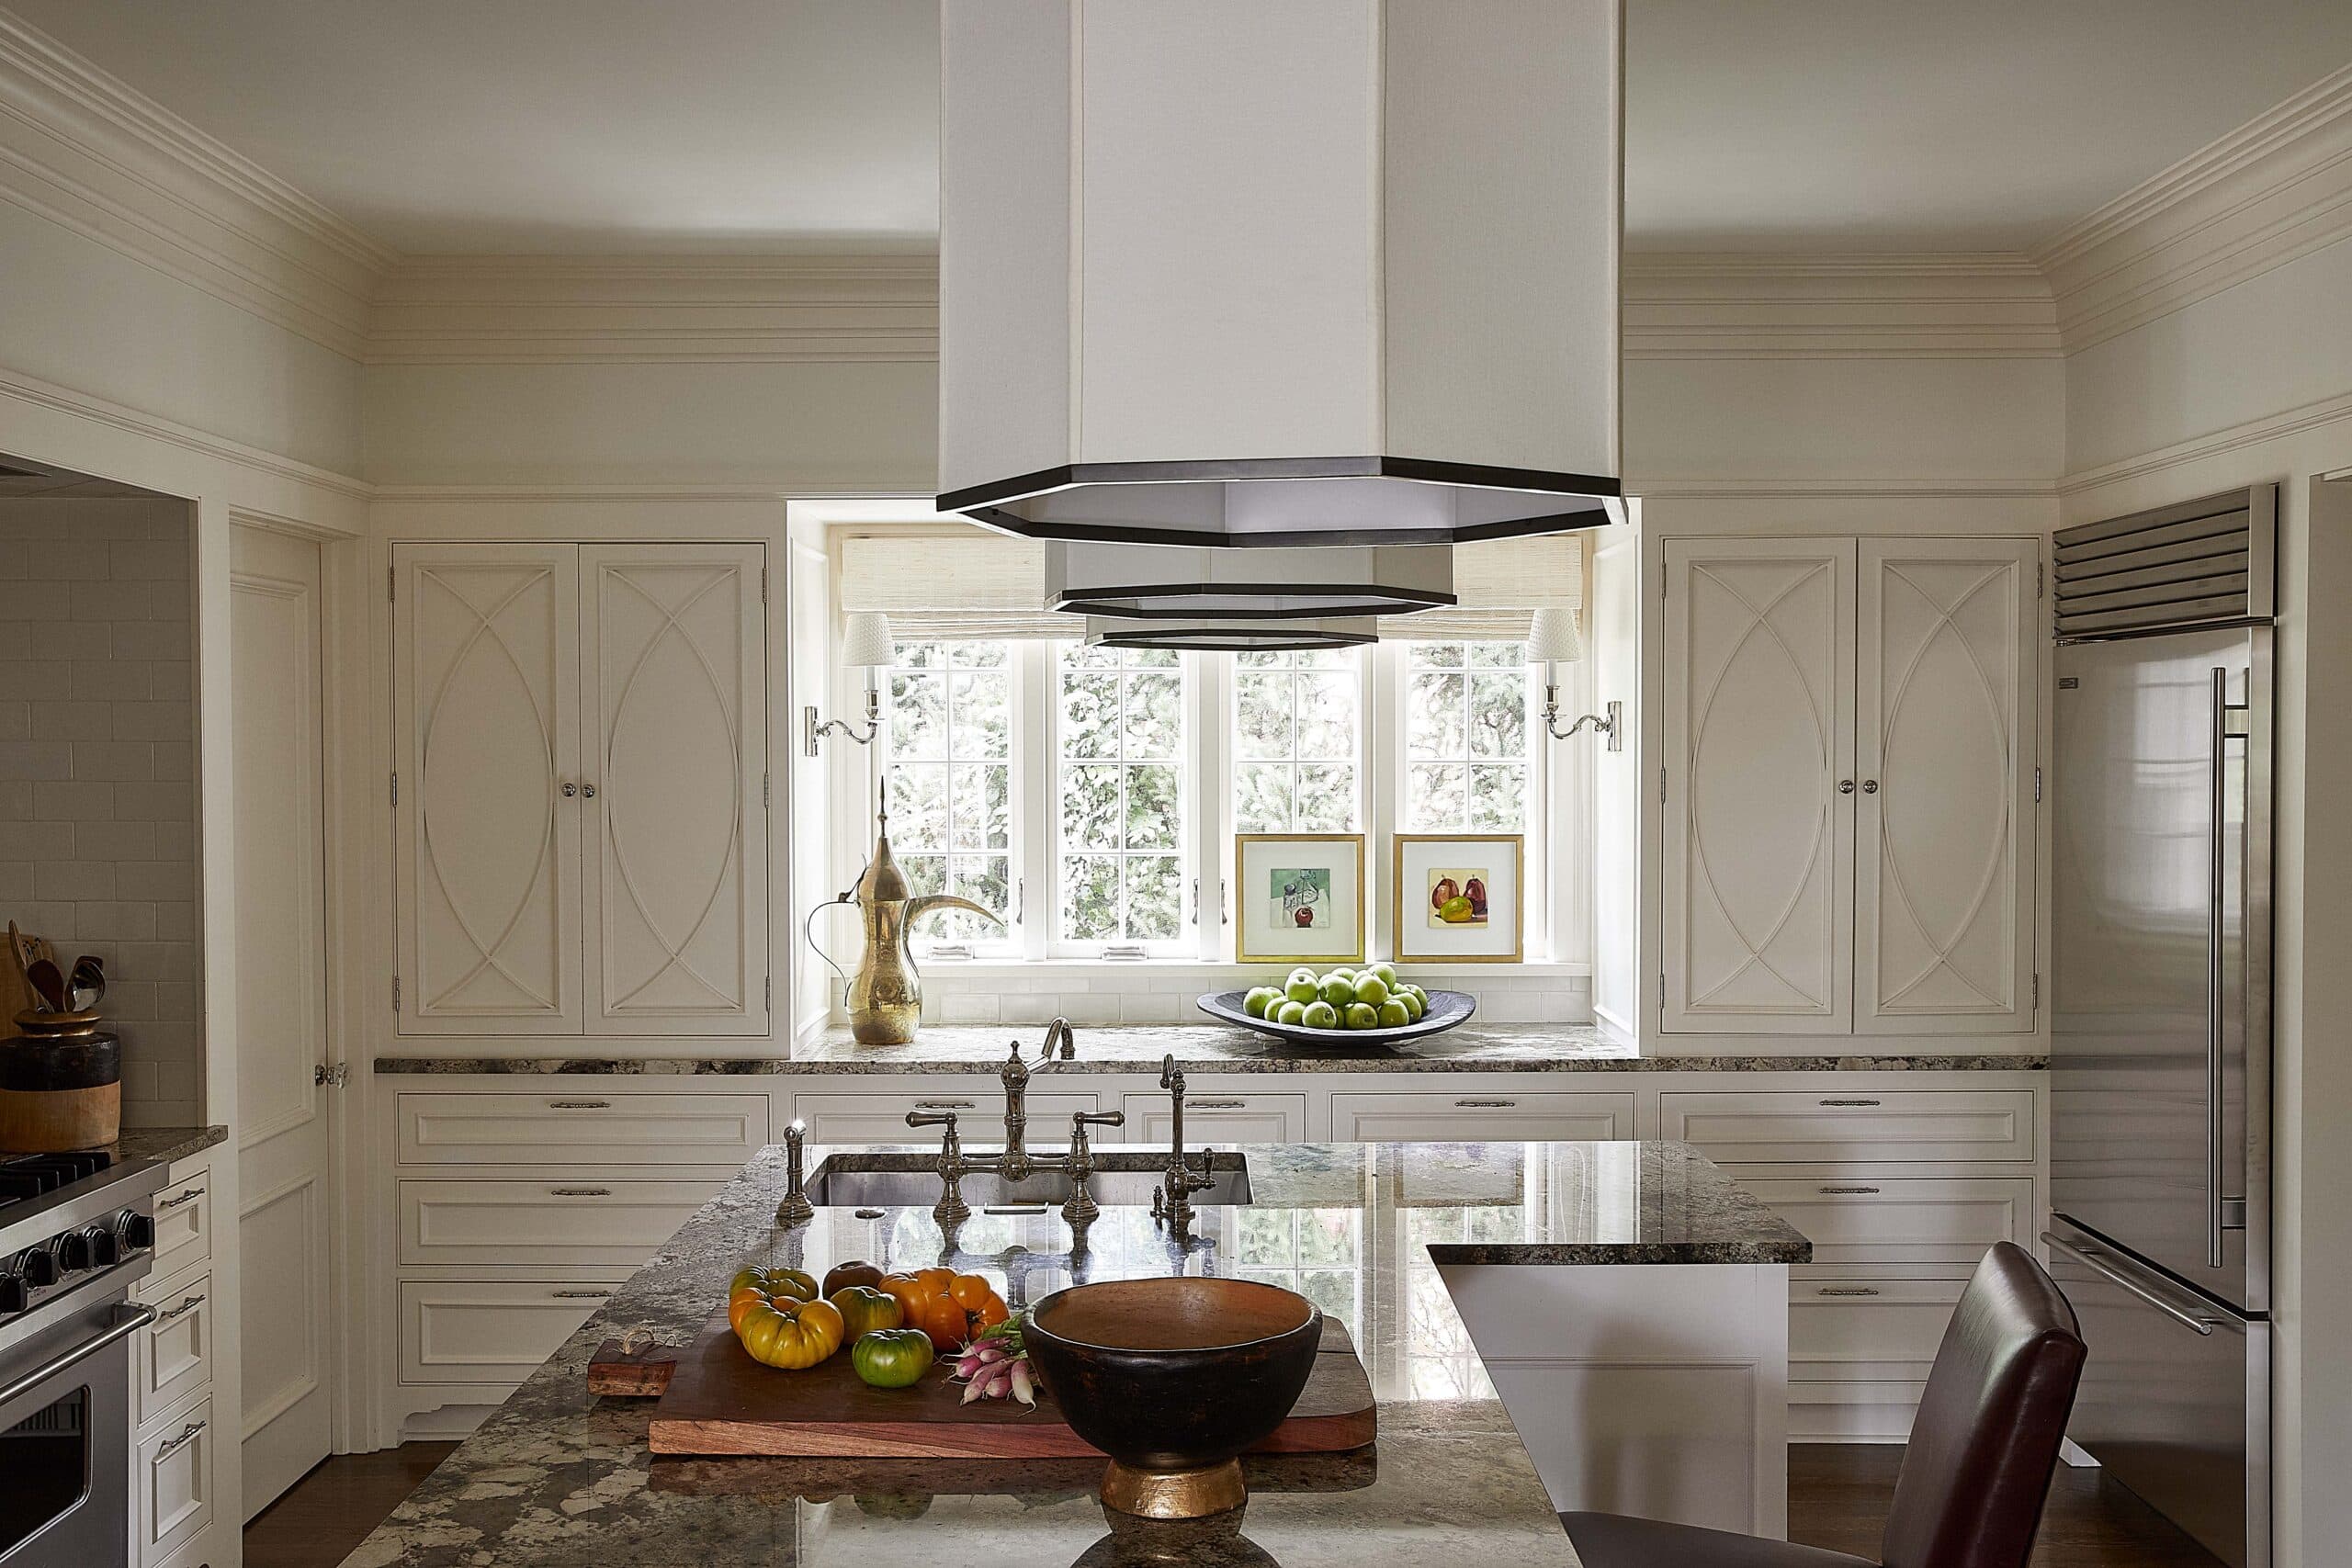 Luxury white kitchen modern interior design, kitchen remodelers denver